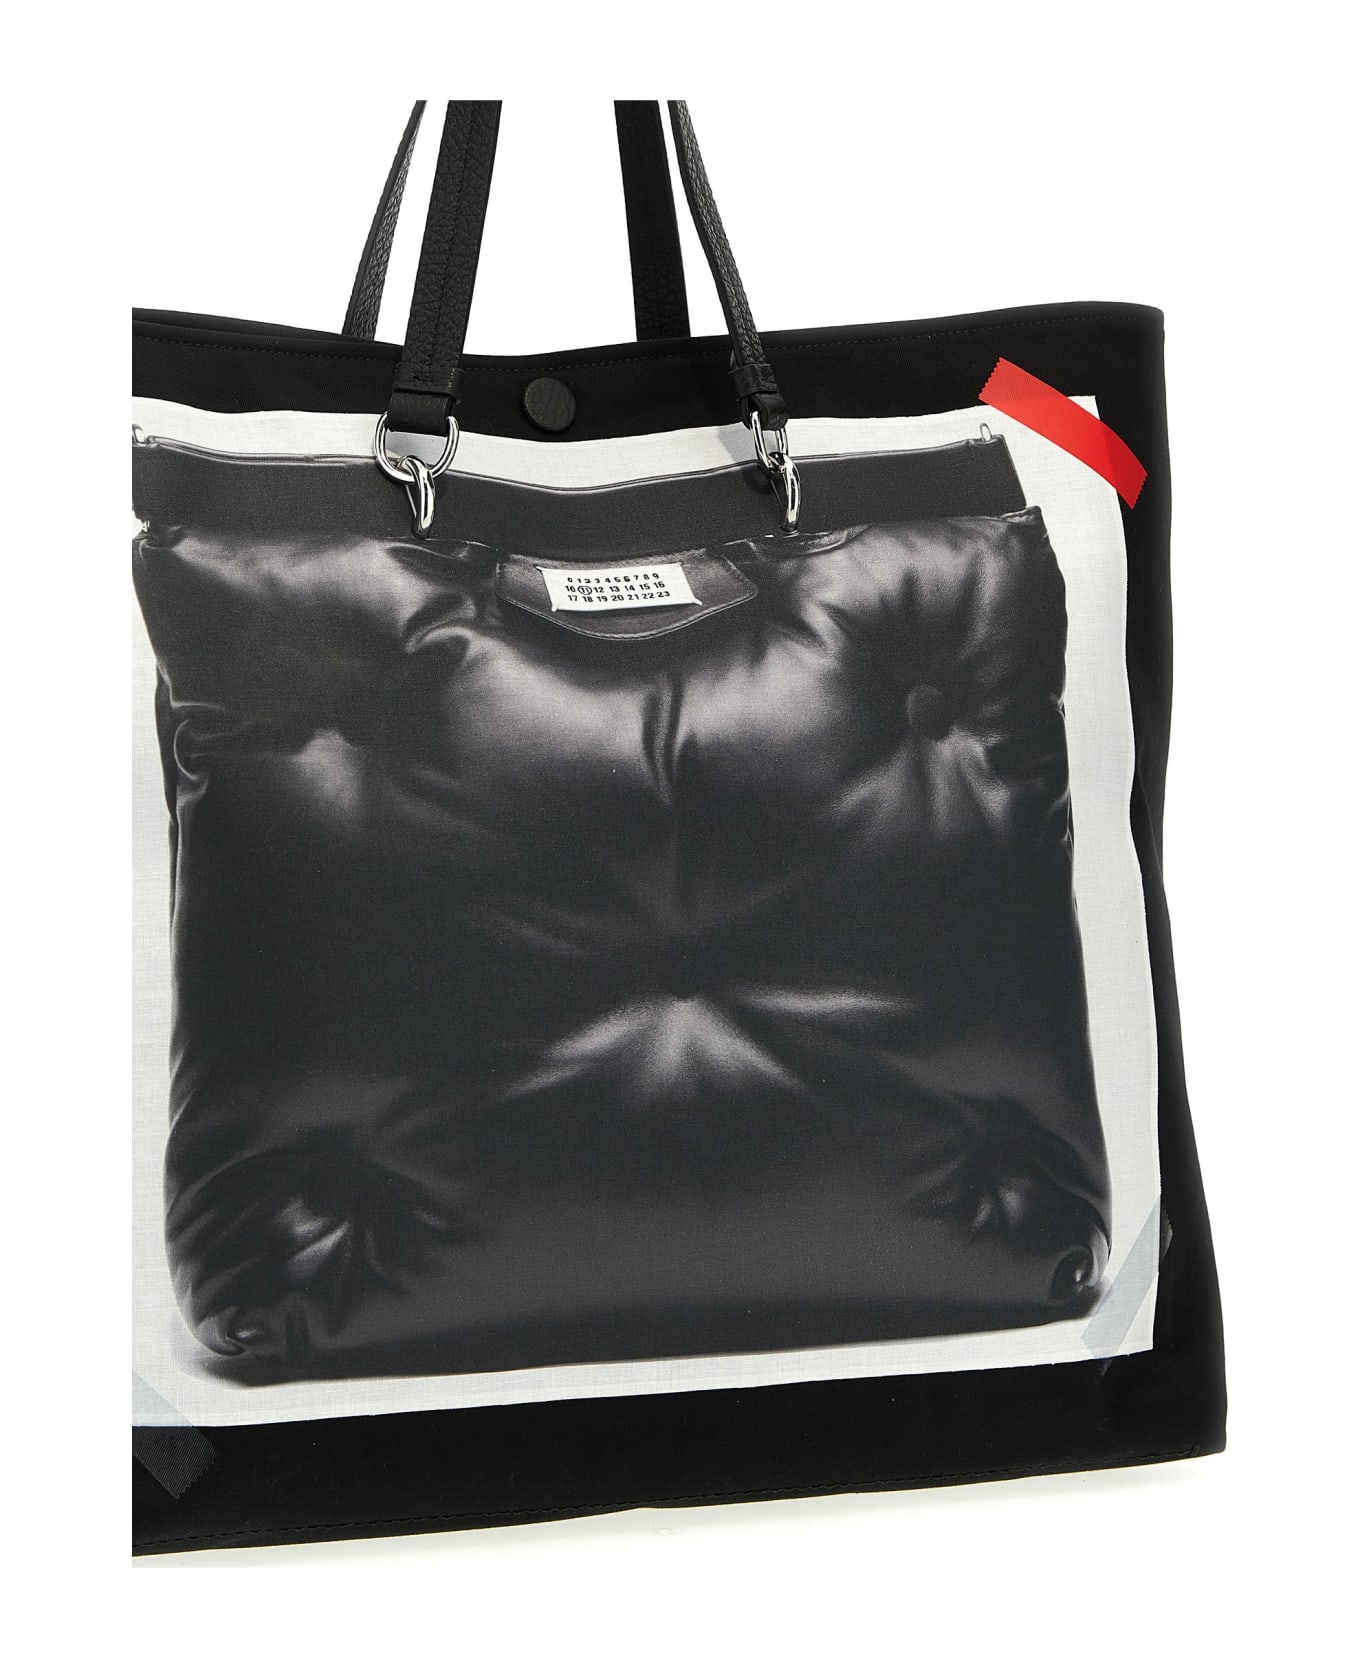 Maison Margiela Trompe L'oeil 5ac Classique Handbag - Black トートバッグ